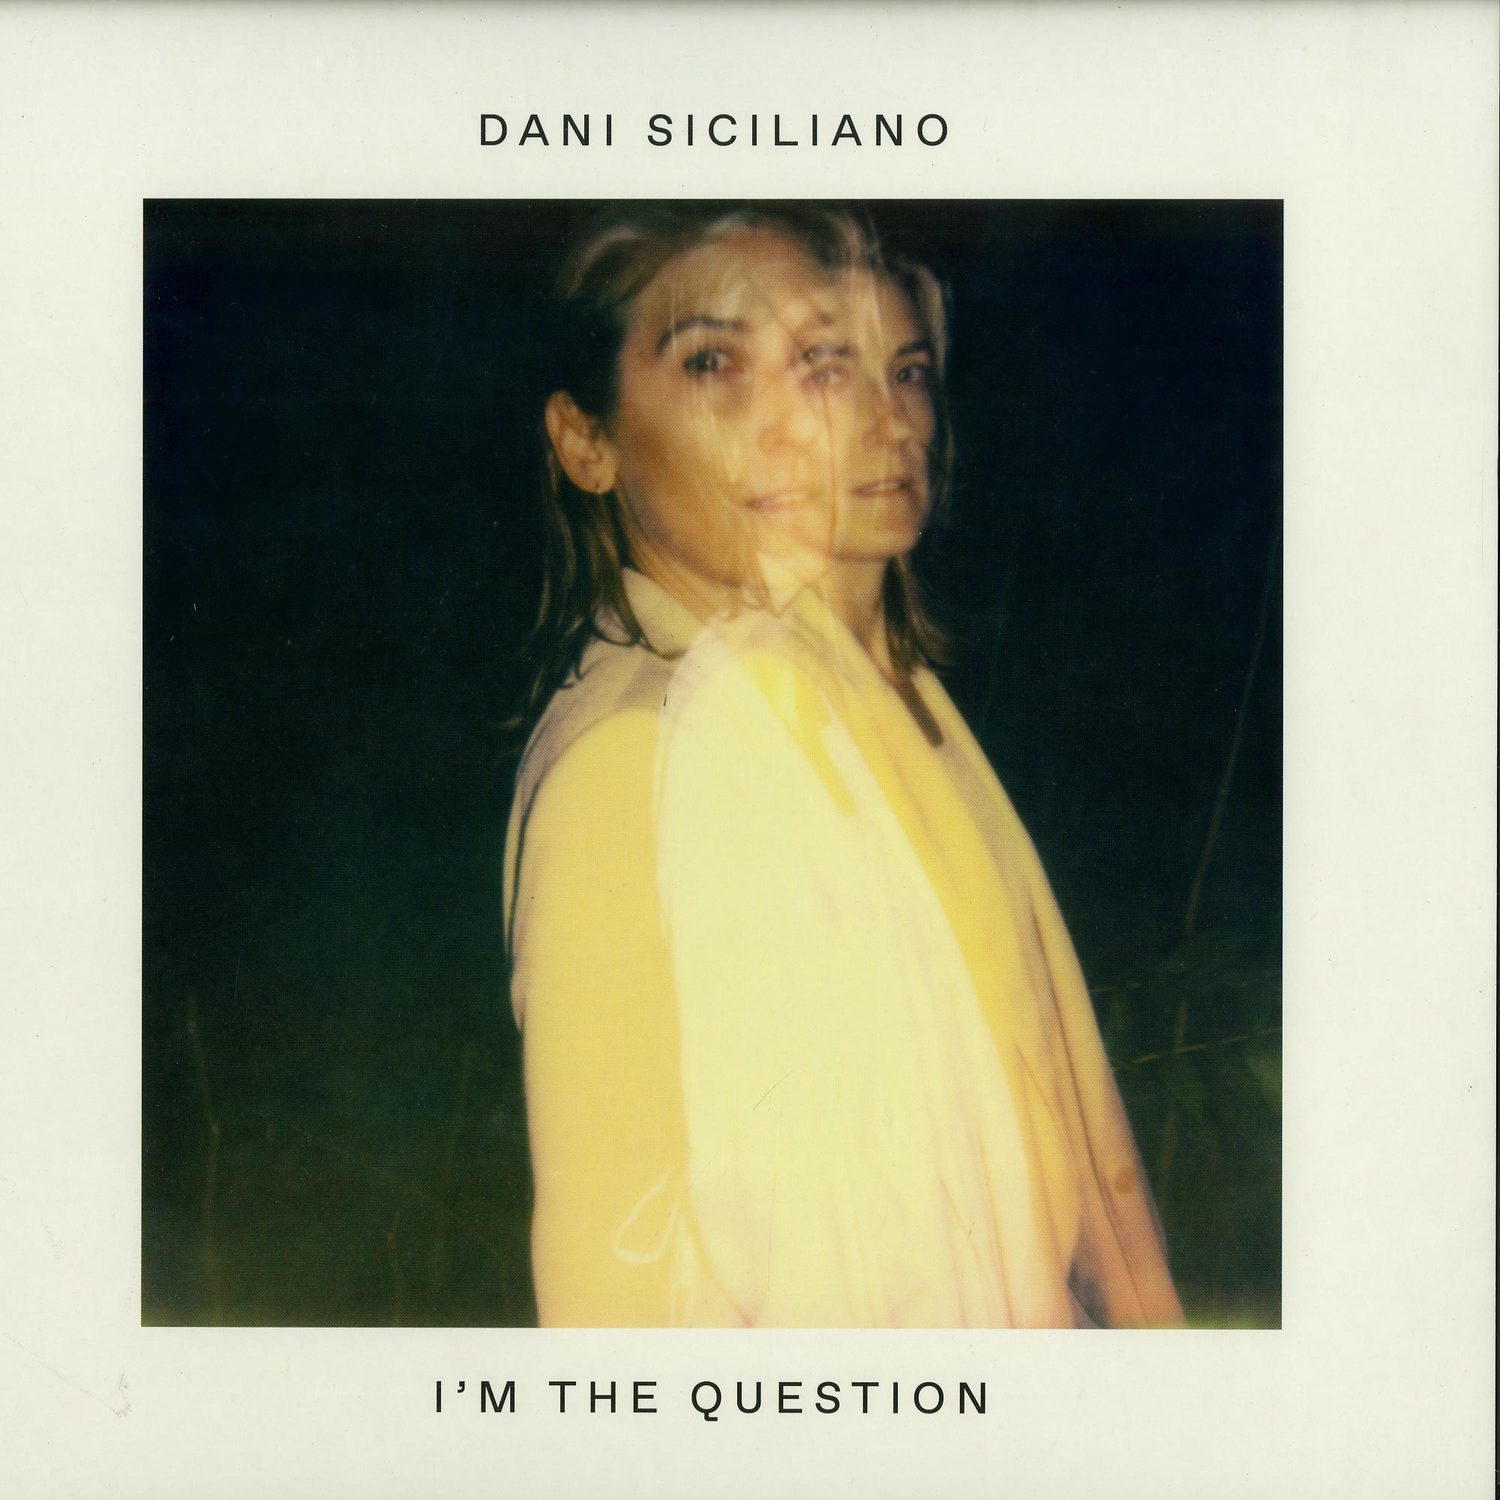 Dani Siciliano - I M THE QUESTION 